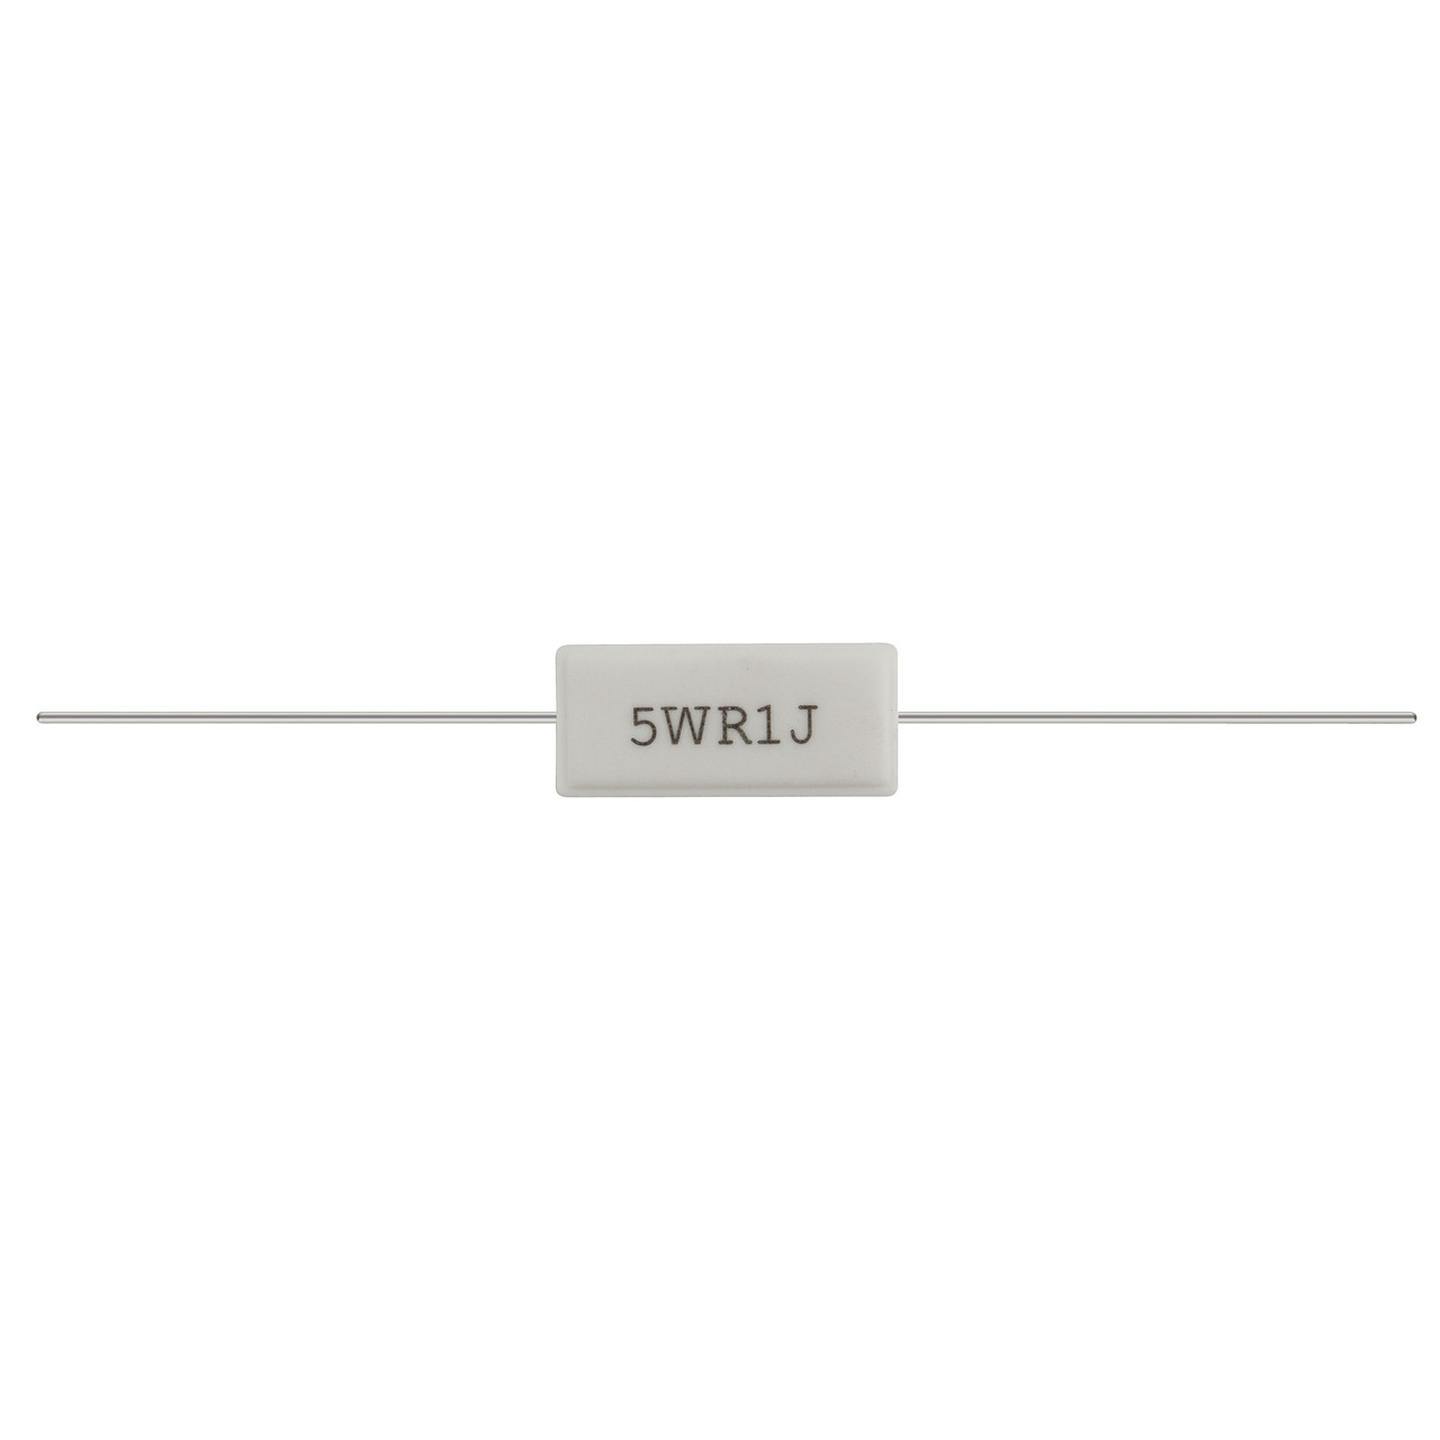 560 Ohm 5 Watt Wire Wound Resistor